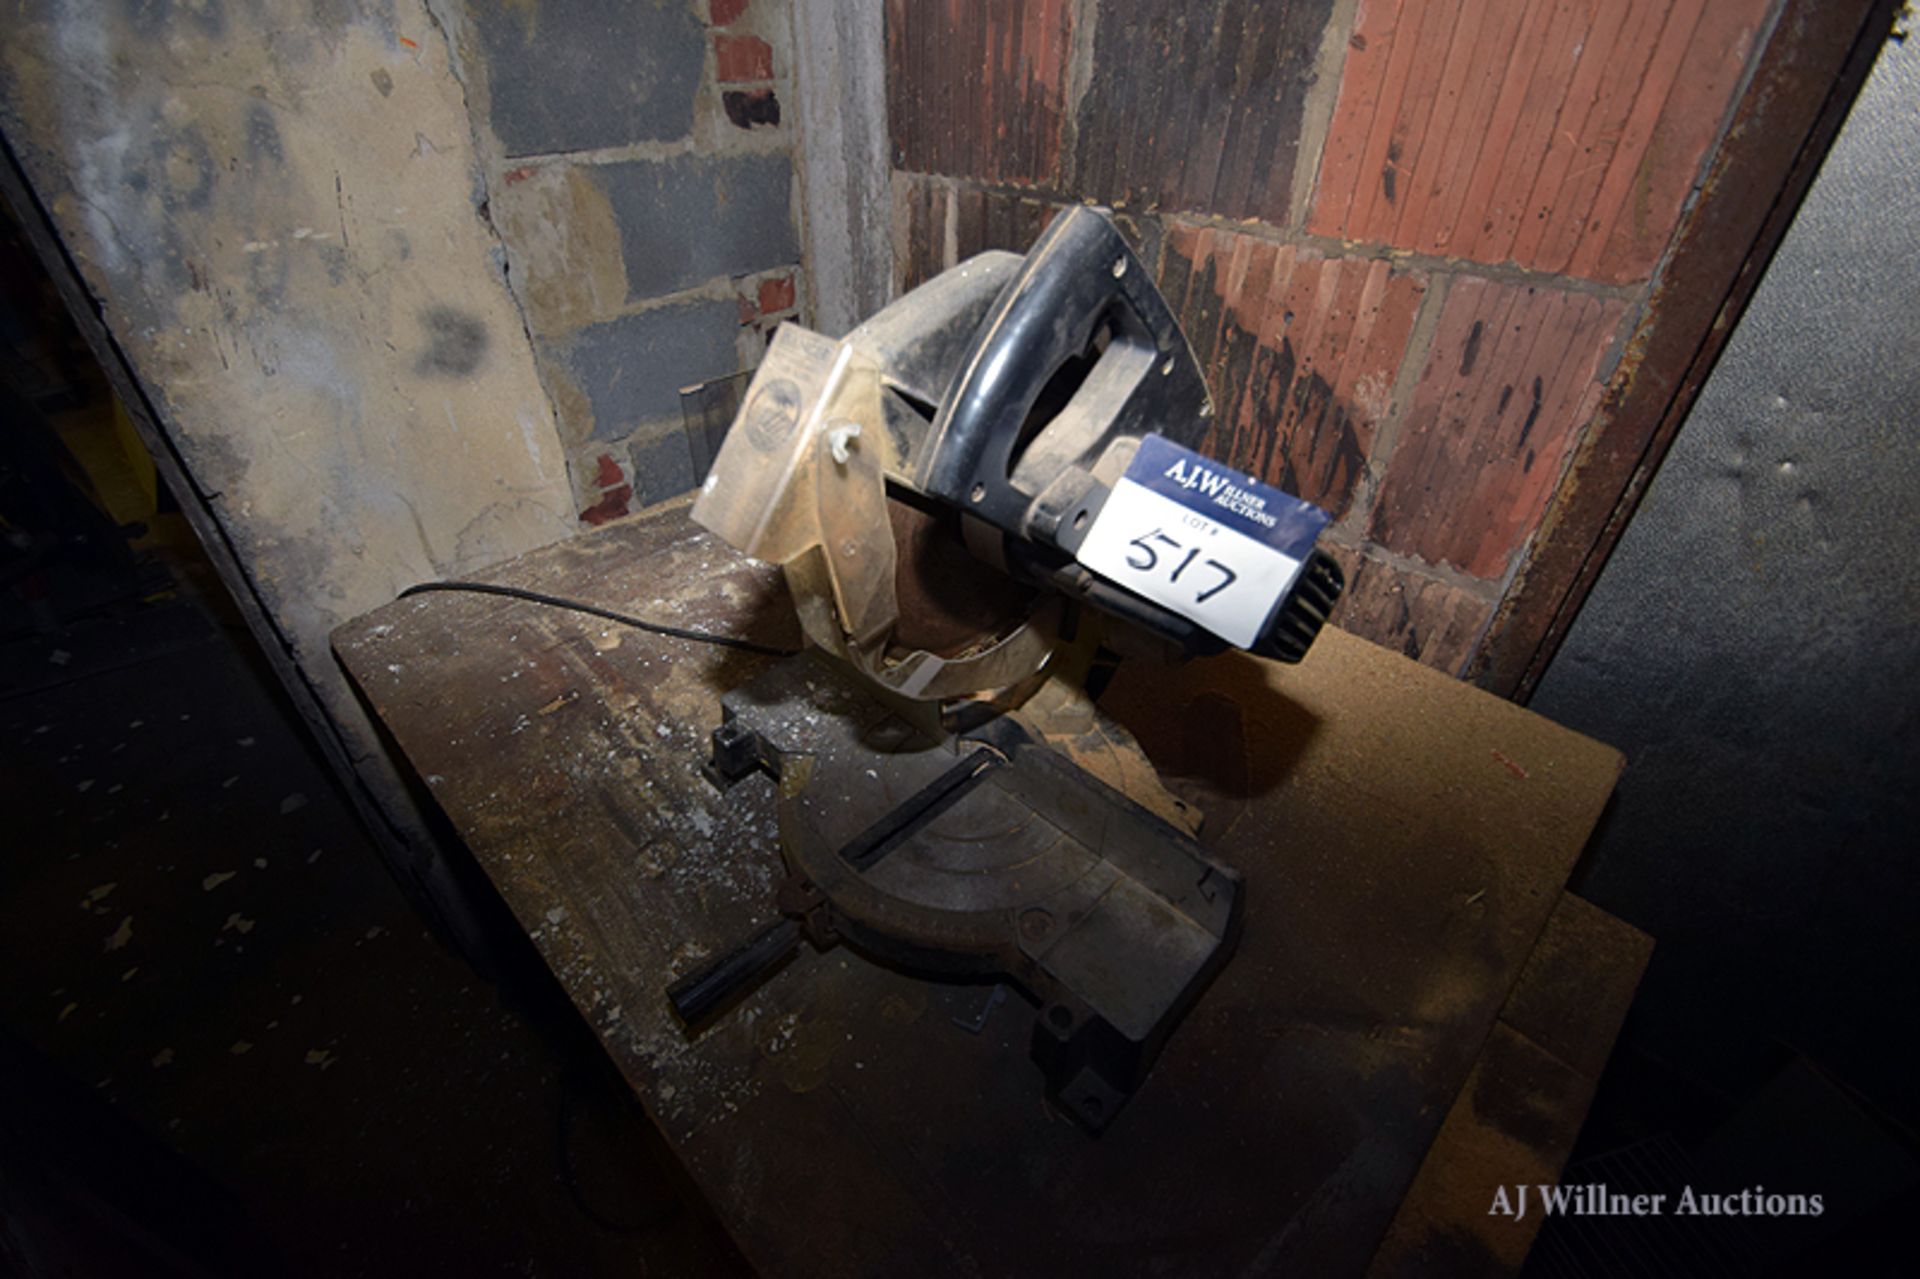 Black & Decker Radial Arm Saw, DeWalt Radial Arm Saw & Craftsman Chop Saw - Image 4 of 7